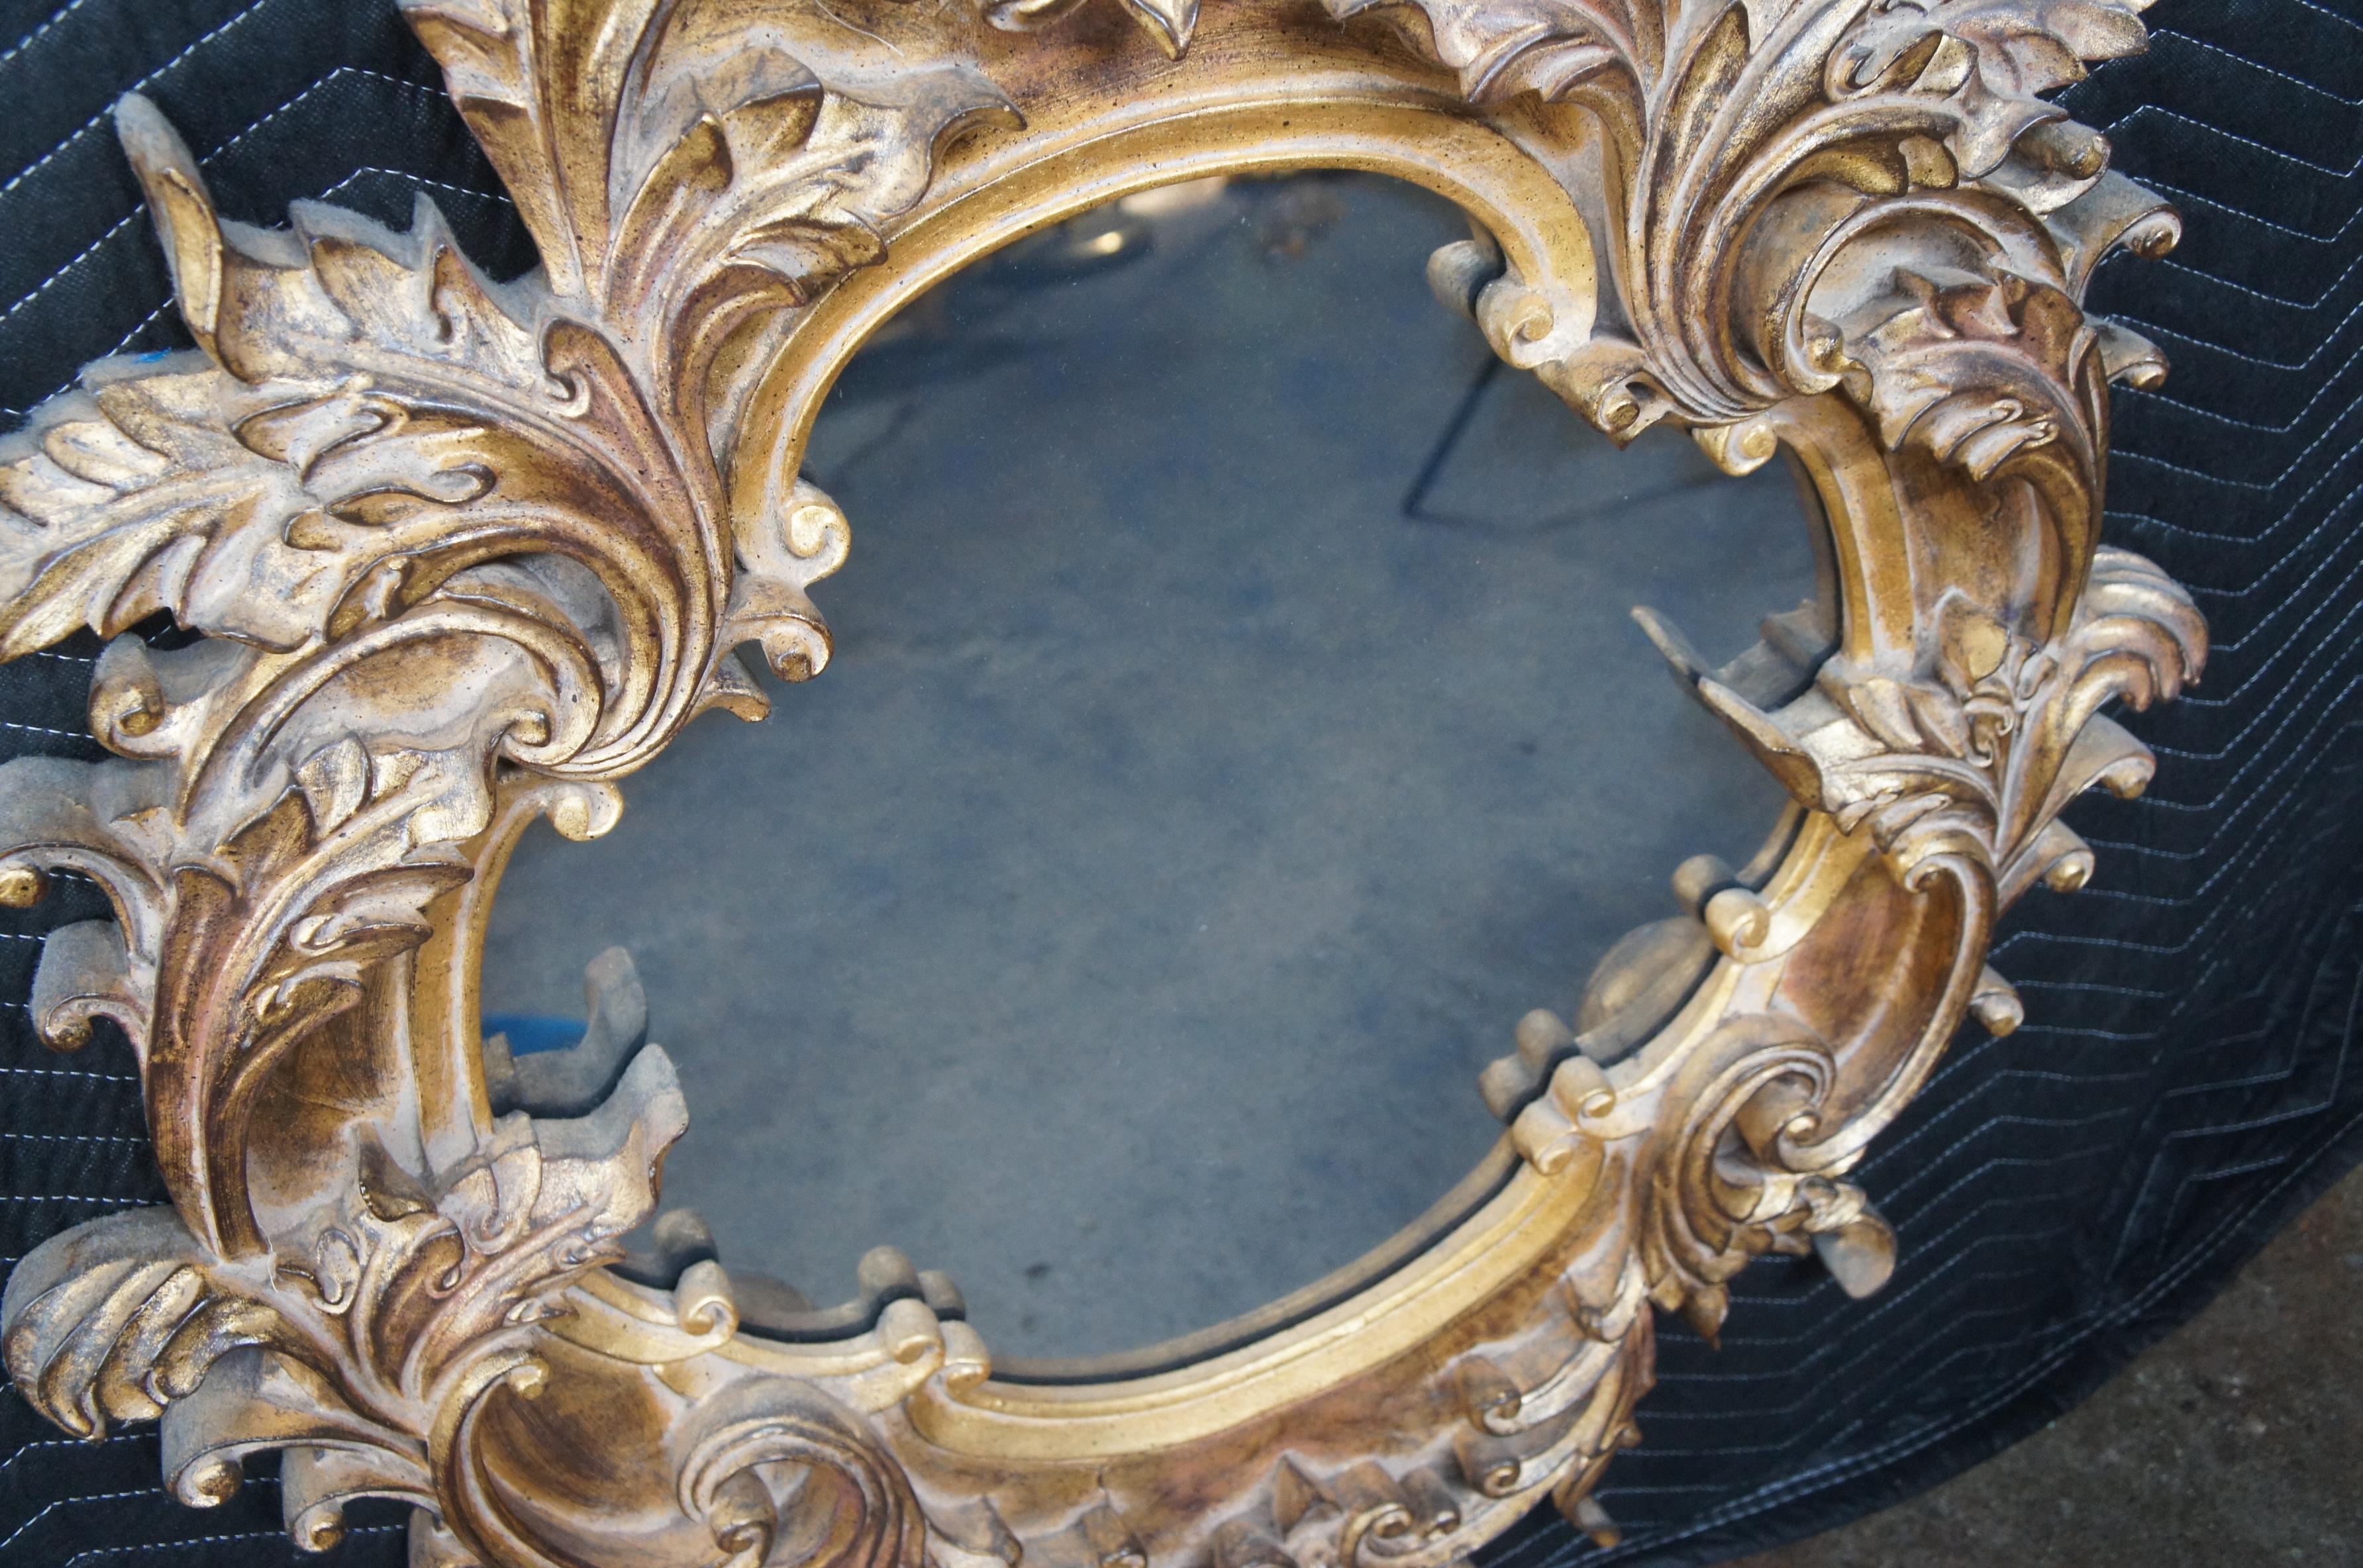 Raschella Collection Italian Regency Baroque Rococo Gold Gilt Wall Vanity Mirror For Sale 1